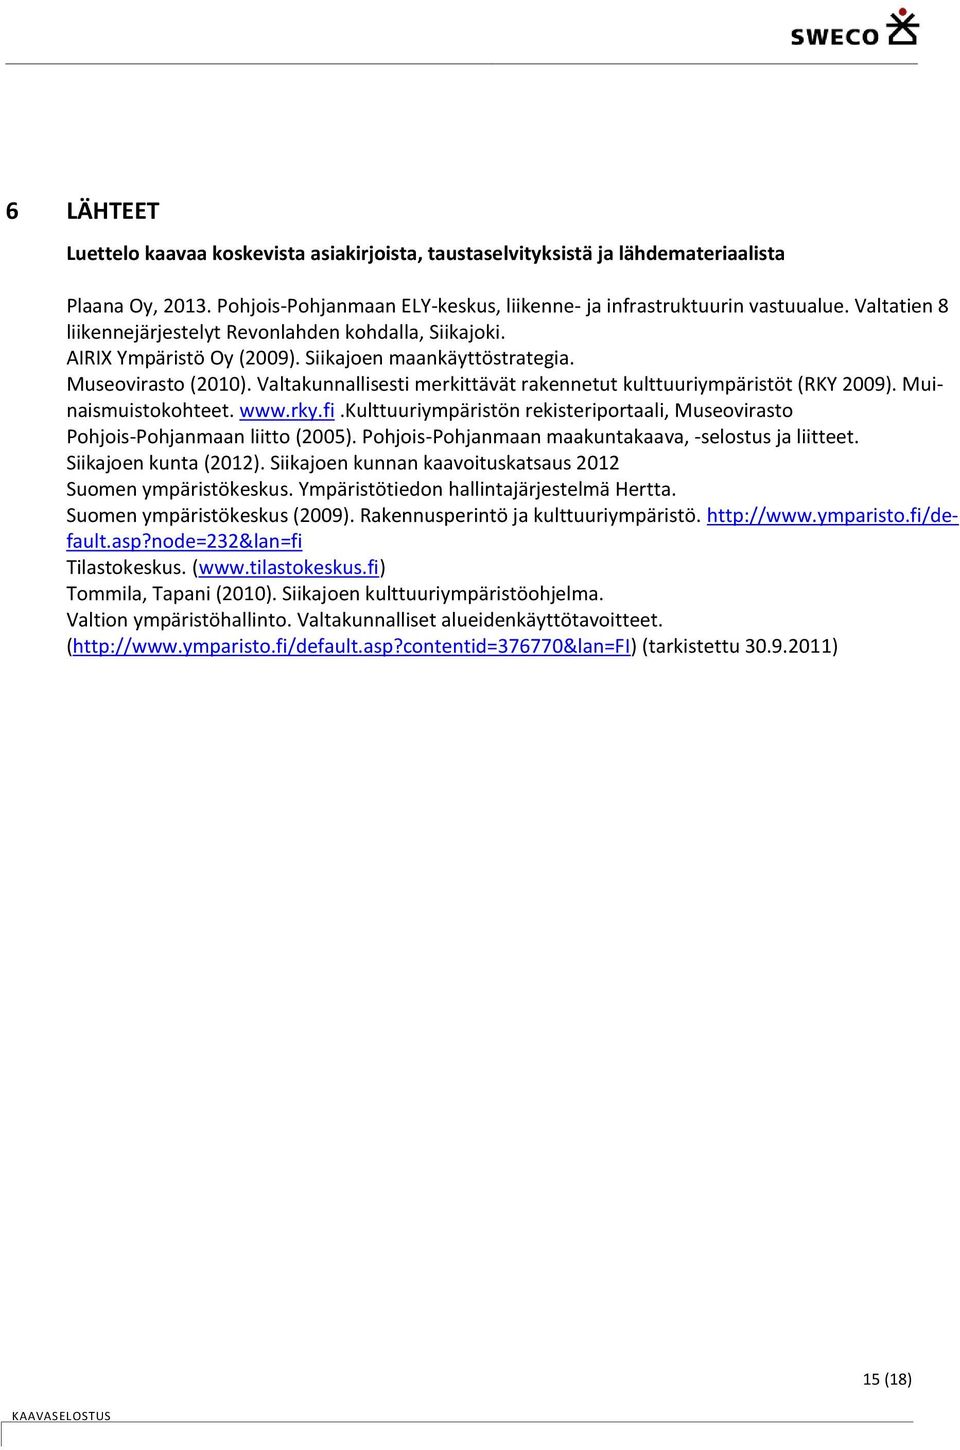 Valtakunnallisesti merkittävät rakennetut kulttuuriympäristöt (RKY 2009). Muinaismuistokohteet. www.rky.fi.kulttuuriympäristön rekisteriportaali, Museovirasto Pohjois-Pohjanmaan liitto (2005).